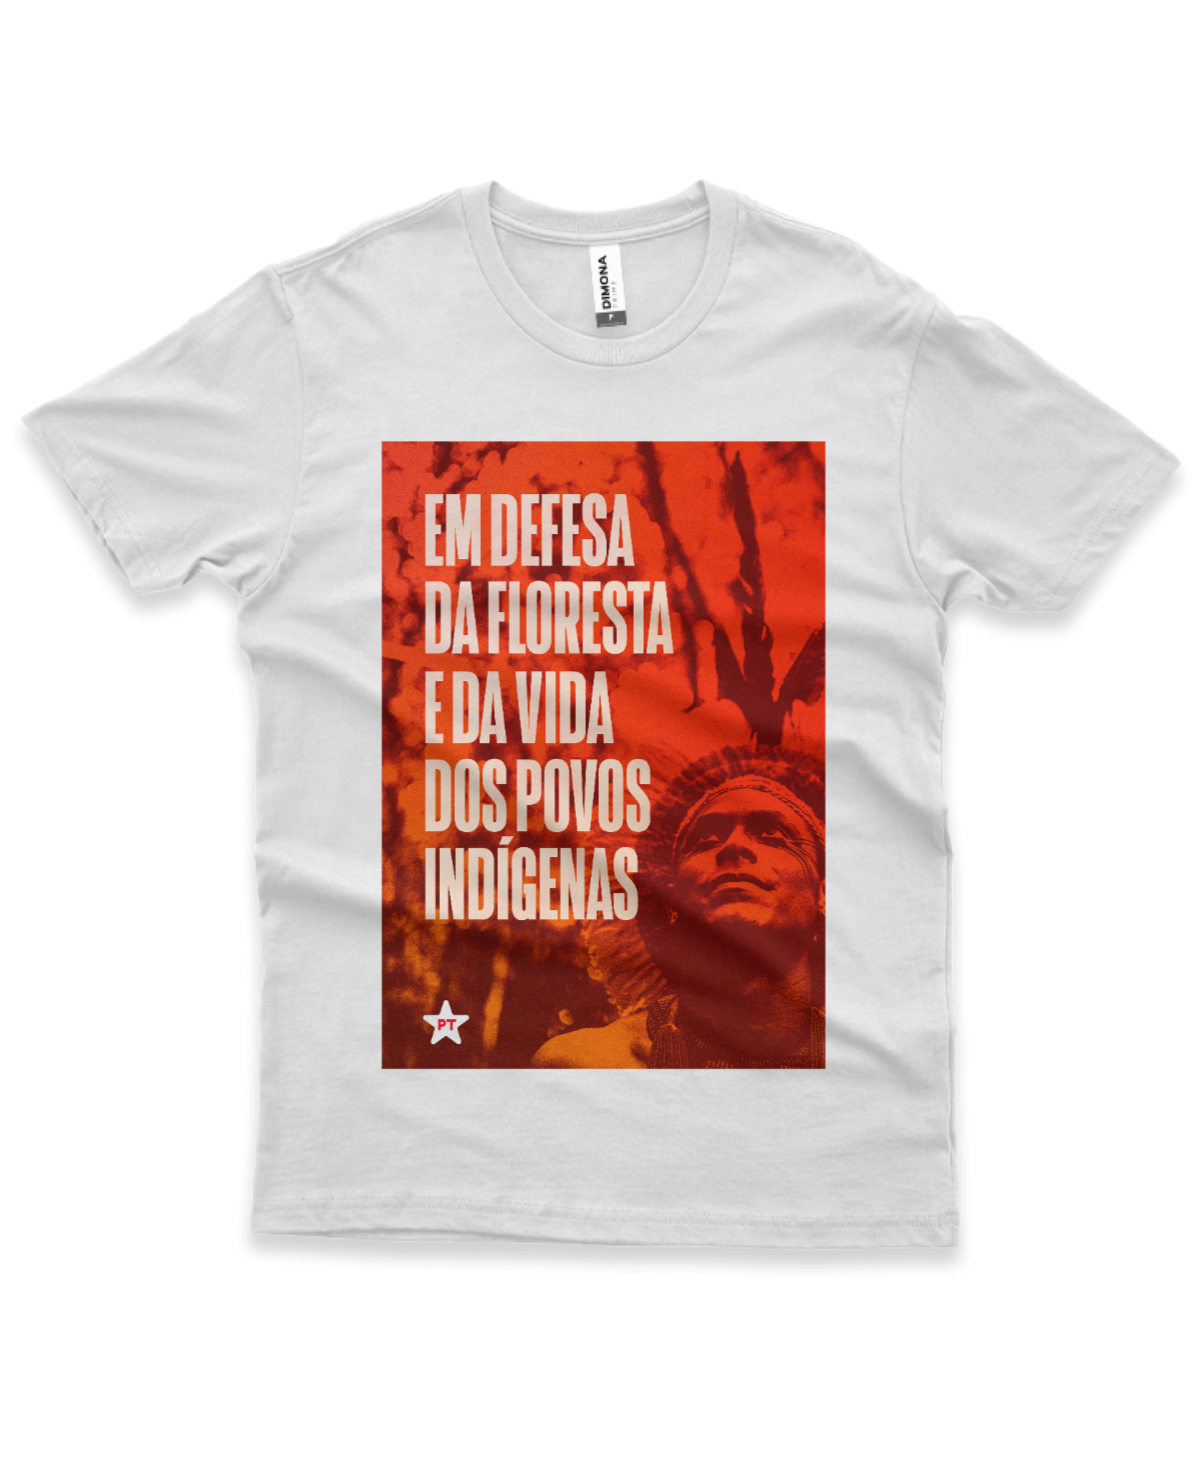 Camiseta Masculina Em defesa da floresta e da vida dos povos indígenas